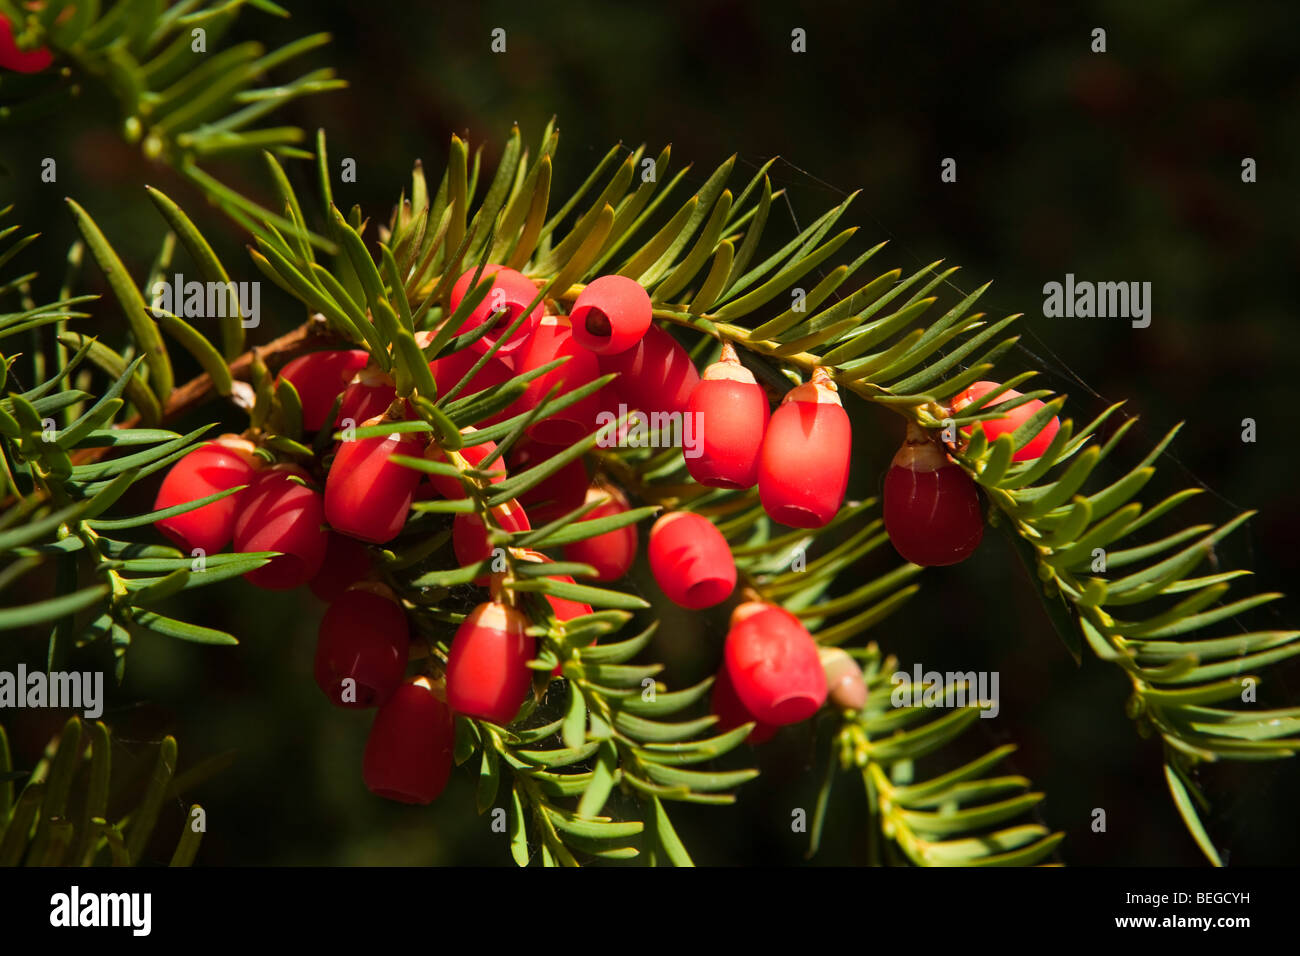 England, Cambridgeshire, Hemingford Grey, St James’ Churchyard, ripe red yew tree berries Stock Photo